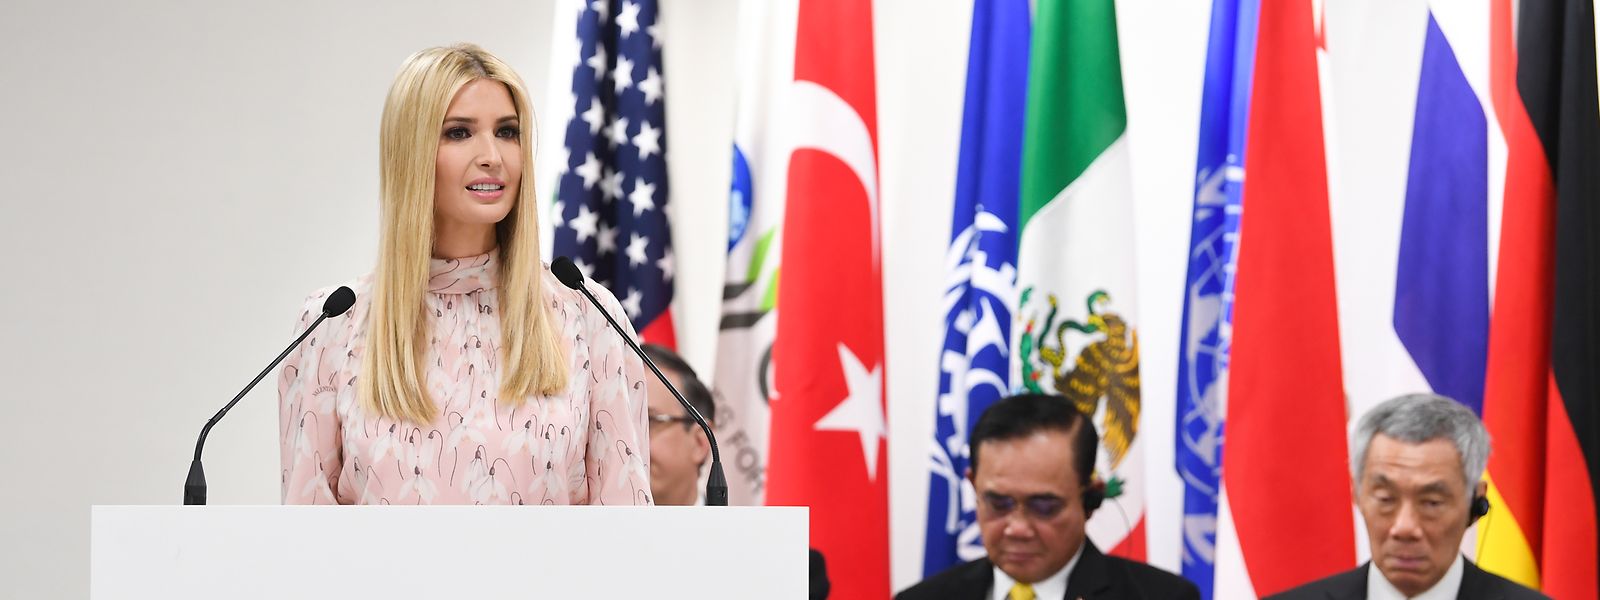 Ivanka Trump, Tochter und Beraterin des US-Präsidenten, spricht während der Leader's Special Event on Women's Empowerment bei dem G20-Gipfel.